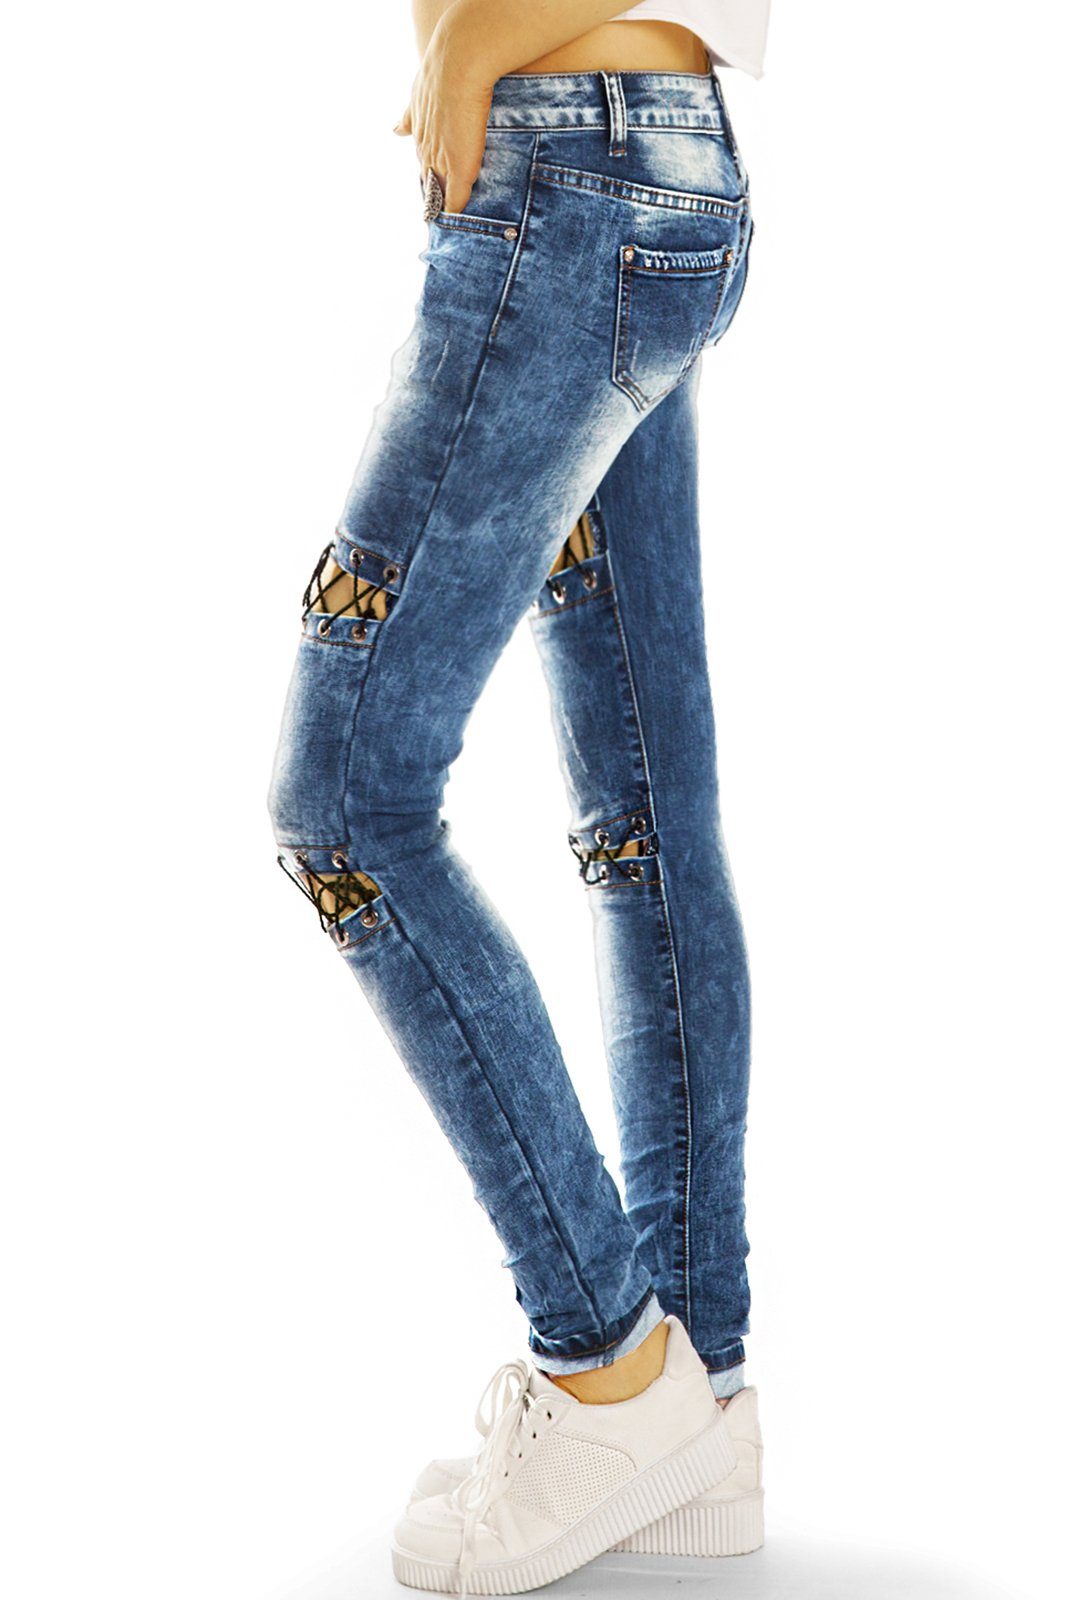 be j31p styled Low - Hüftjeans Rise, Low-rise-Jeans Damen Details auffällige - 5-Pocket-Style Hose Design mit Stretch-Anteil,